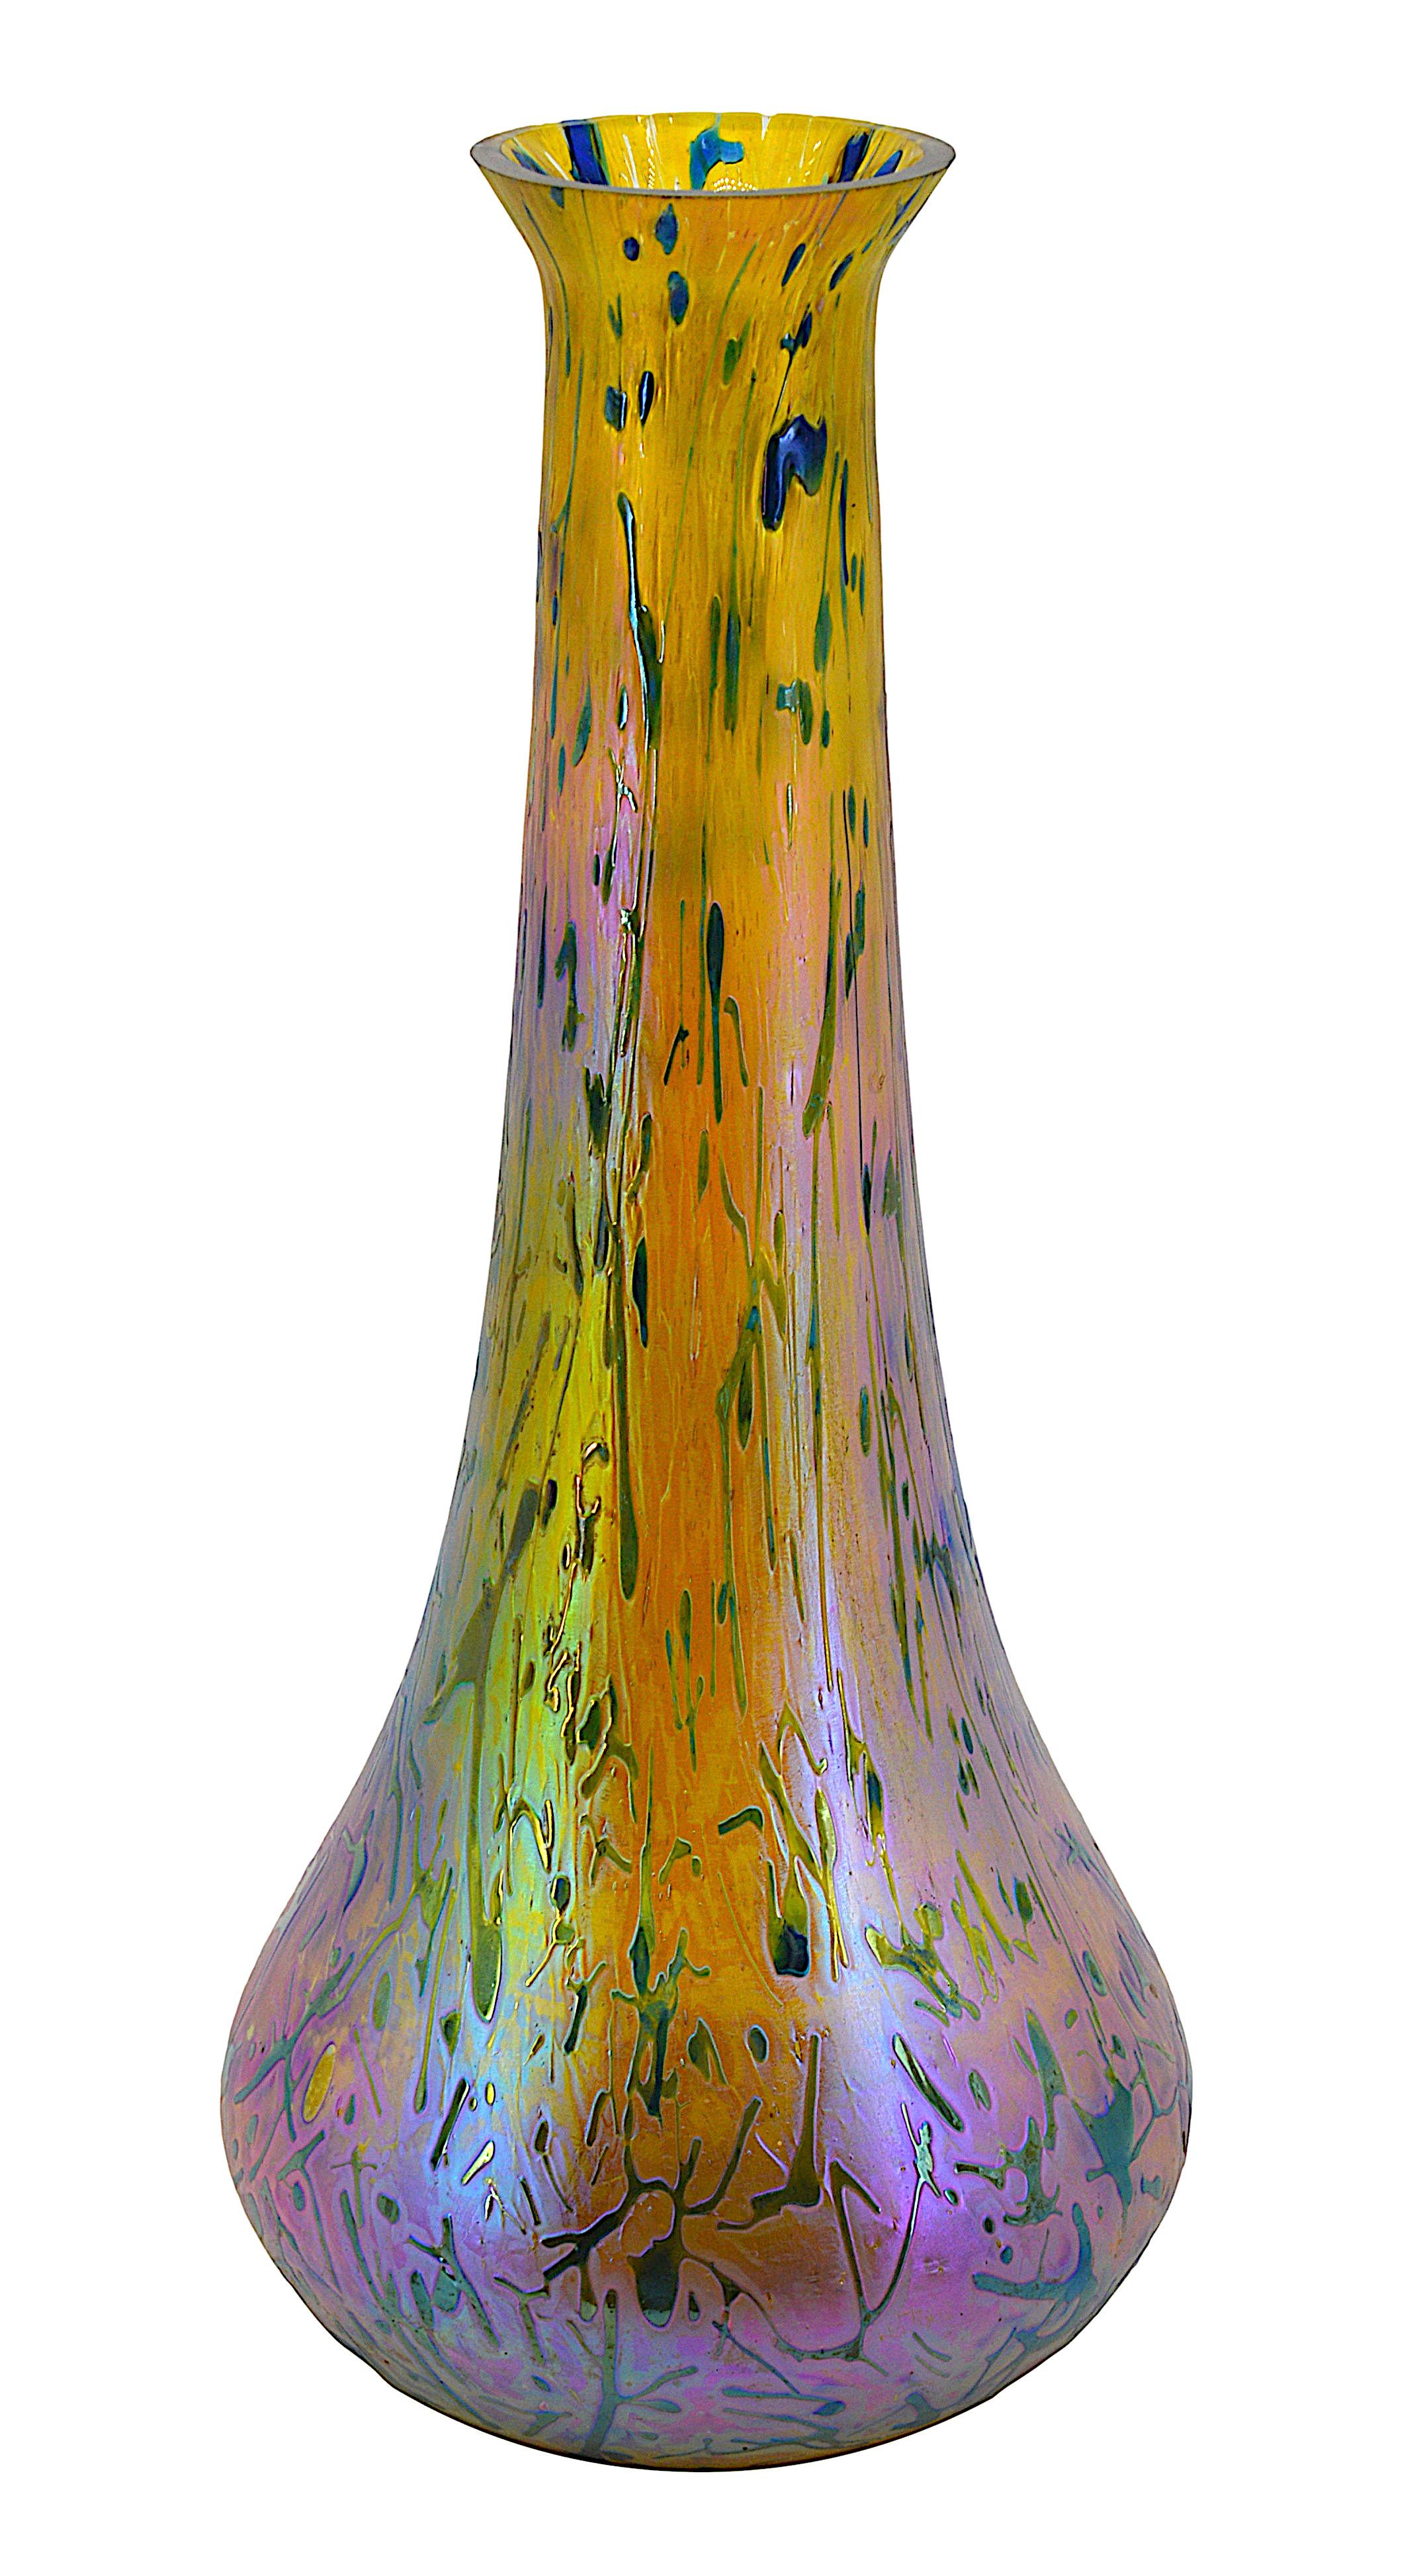 Vase en verre d'art de Kralik (Bohemia), vers 1900. Eleonorenhain, vase en verre d'art. Verre incolore avec décor ''Eleonorenhain'' en cuivre irisé, jaune et violet. Magnifique effet irisé bleu cobalt très difficile à capturer sur une photo. Les